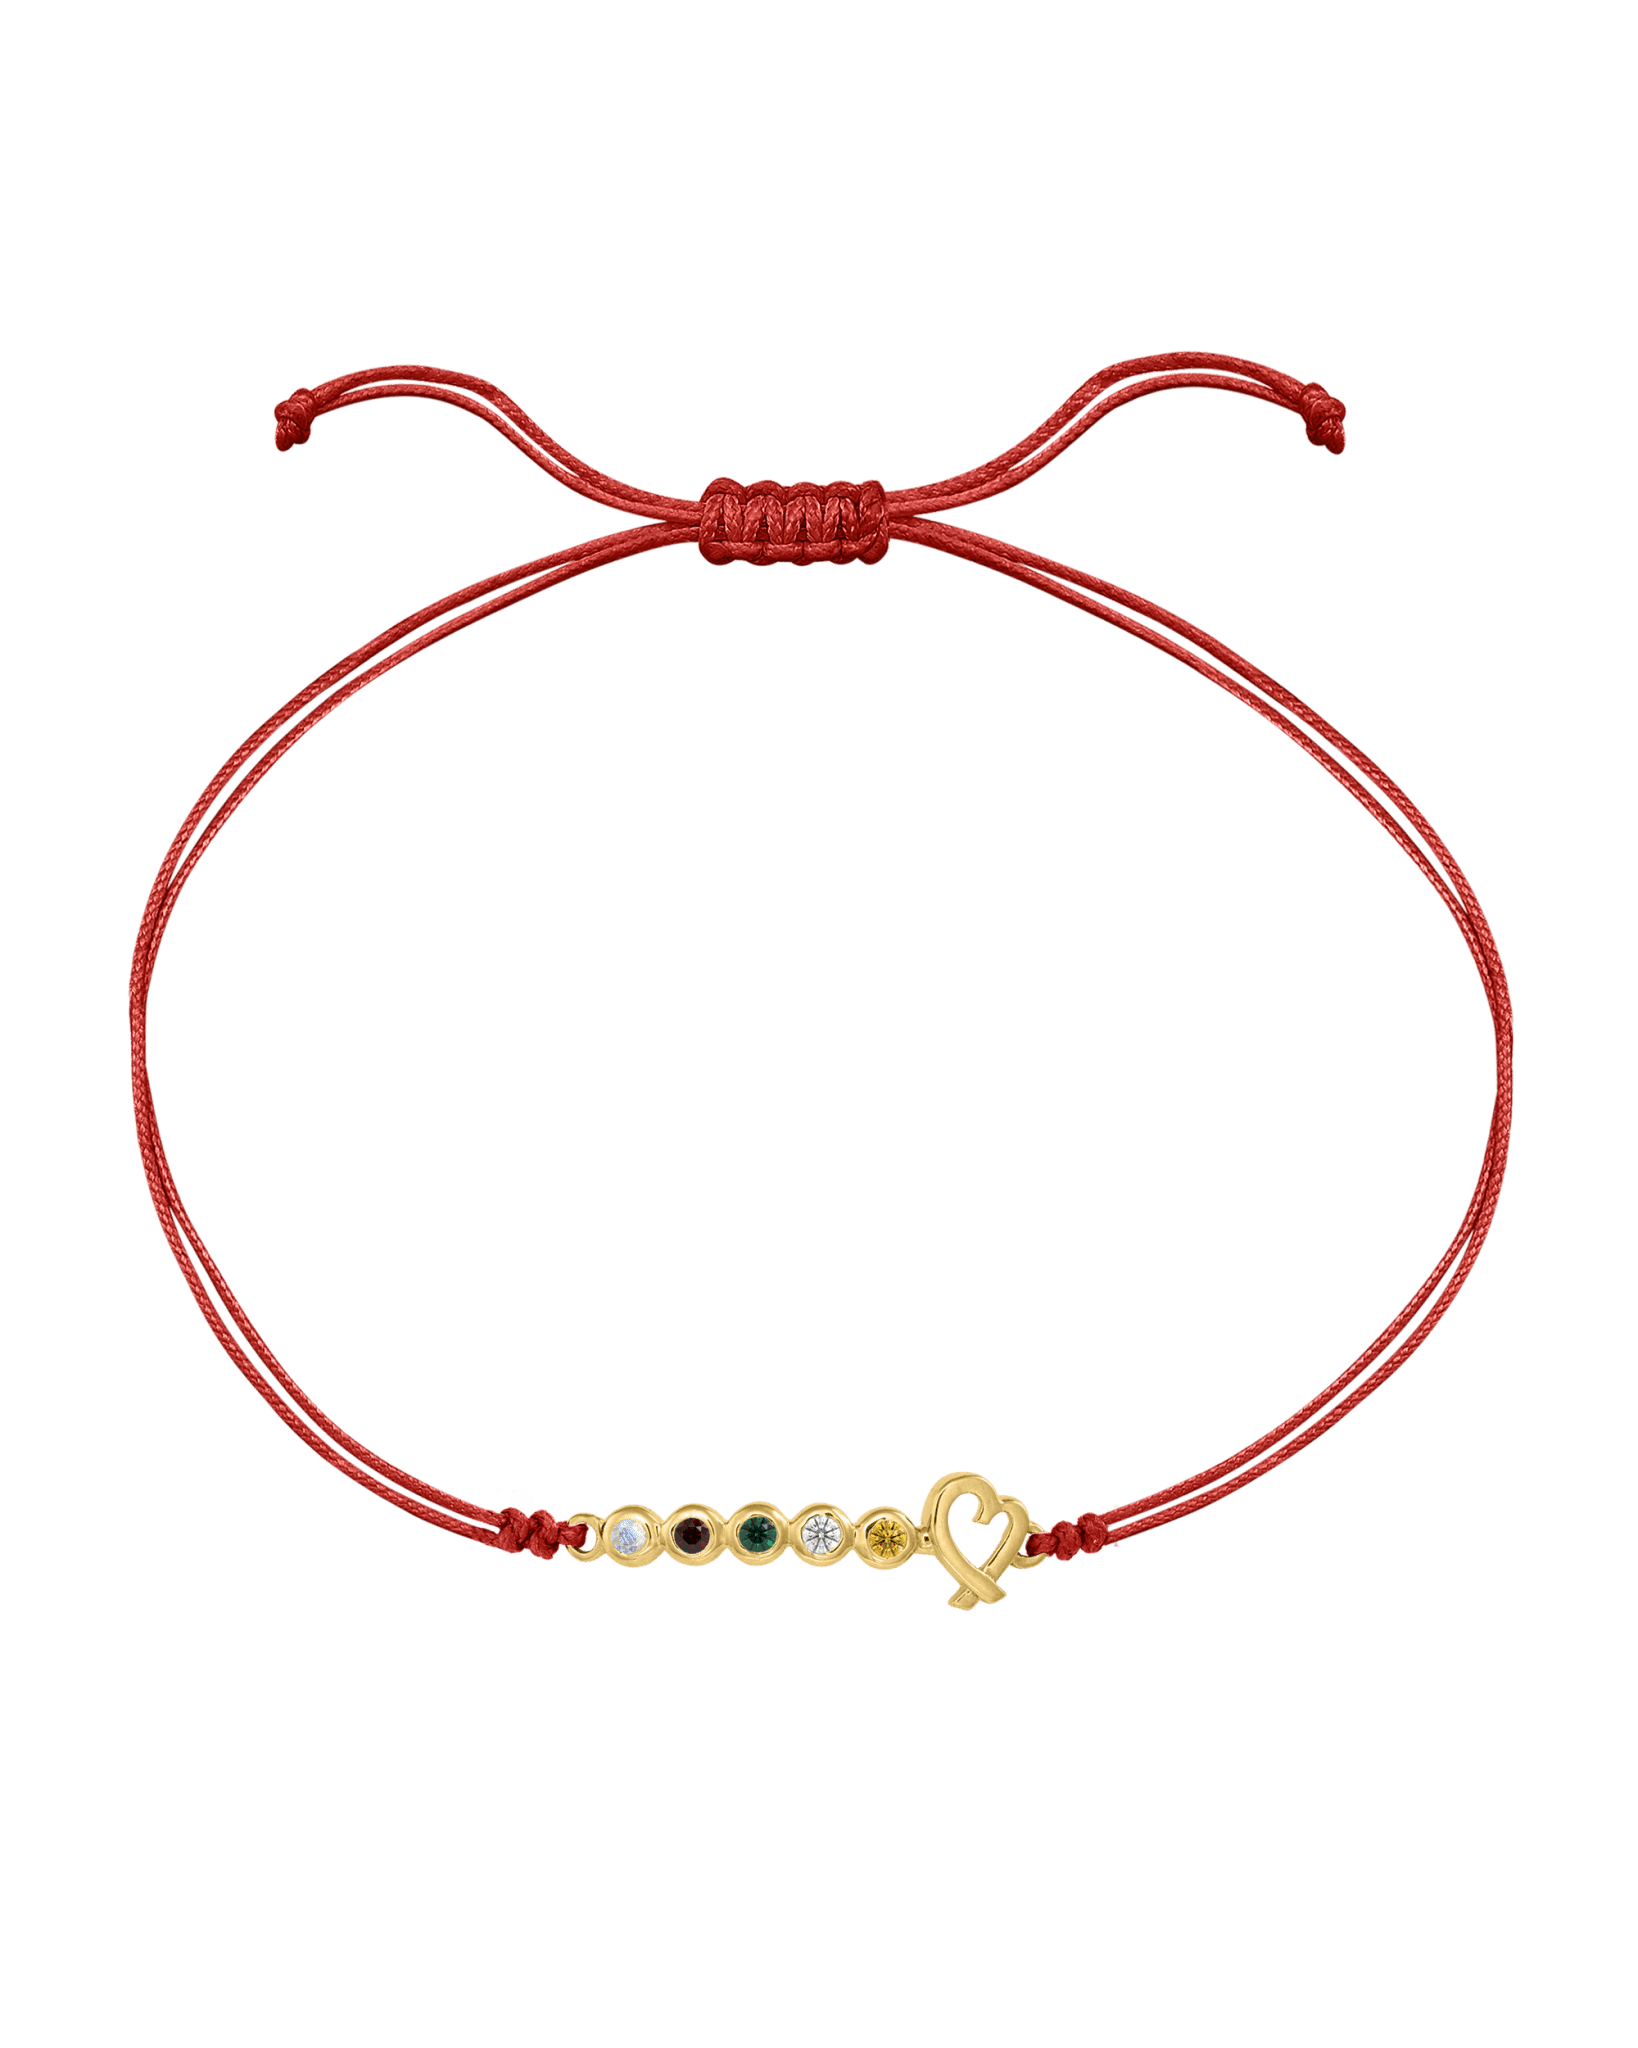 Order 14K Gold Heart Red Charm Bracelet